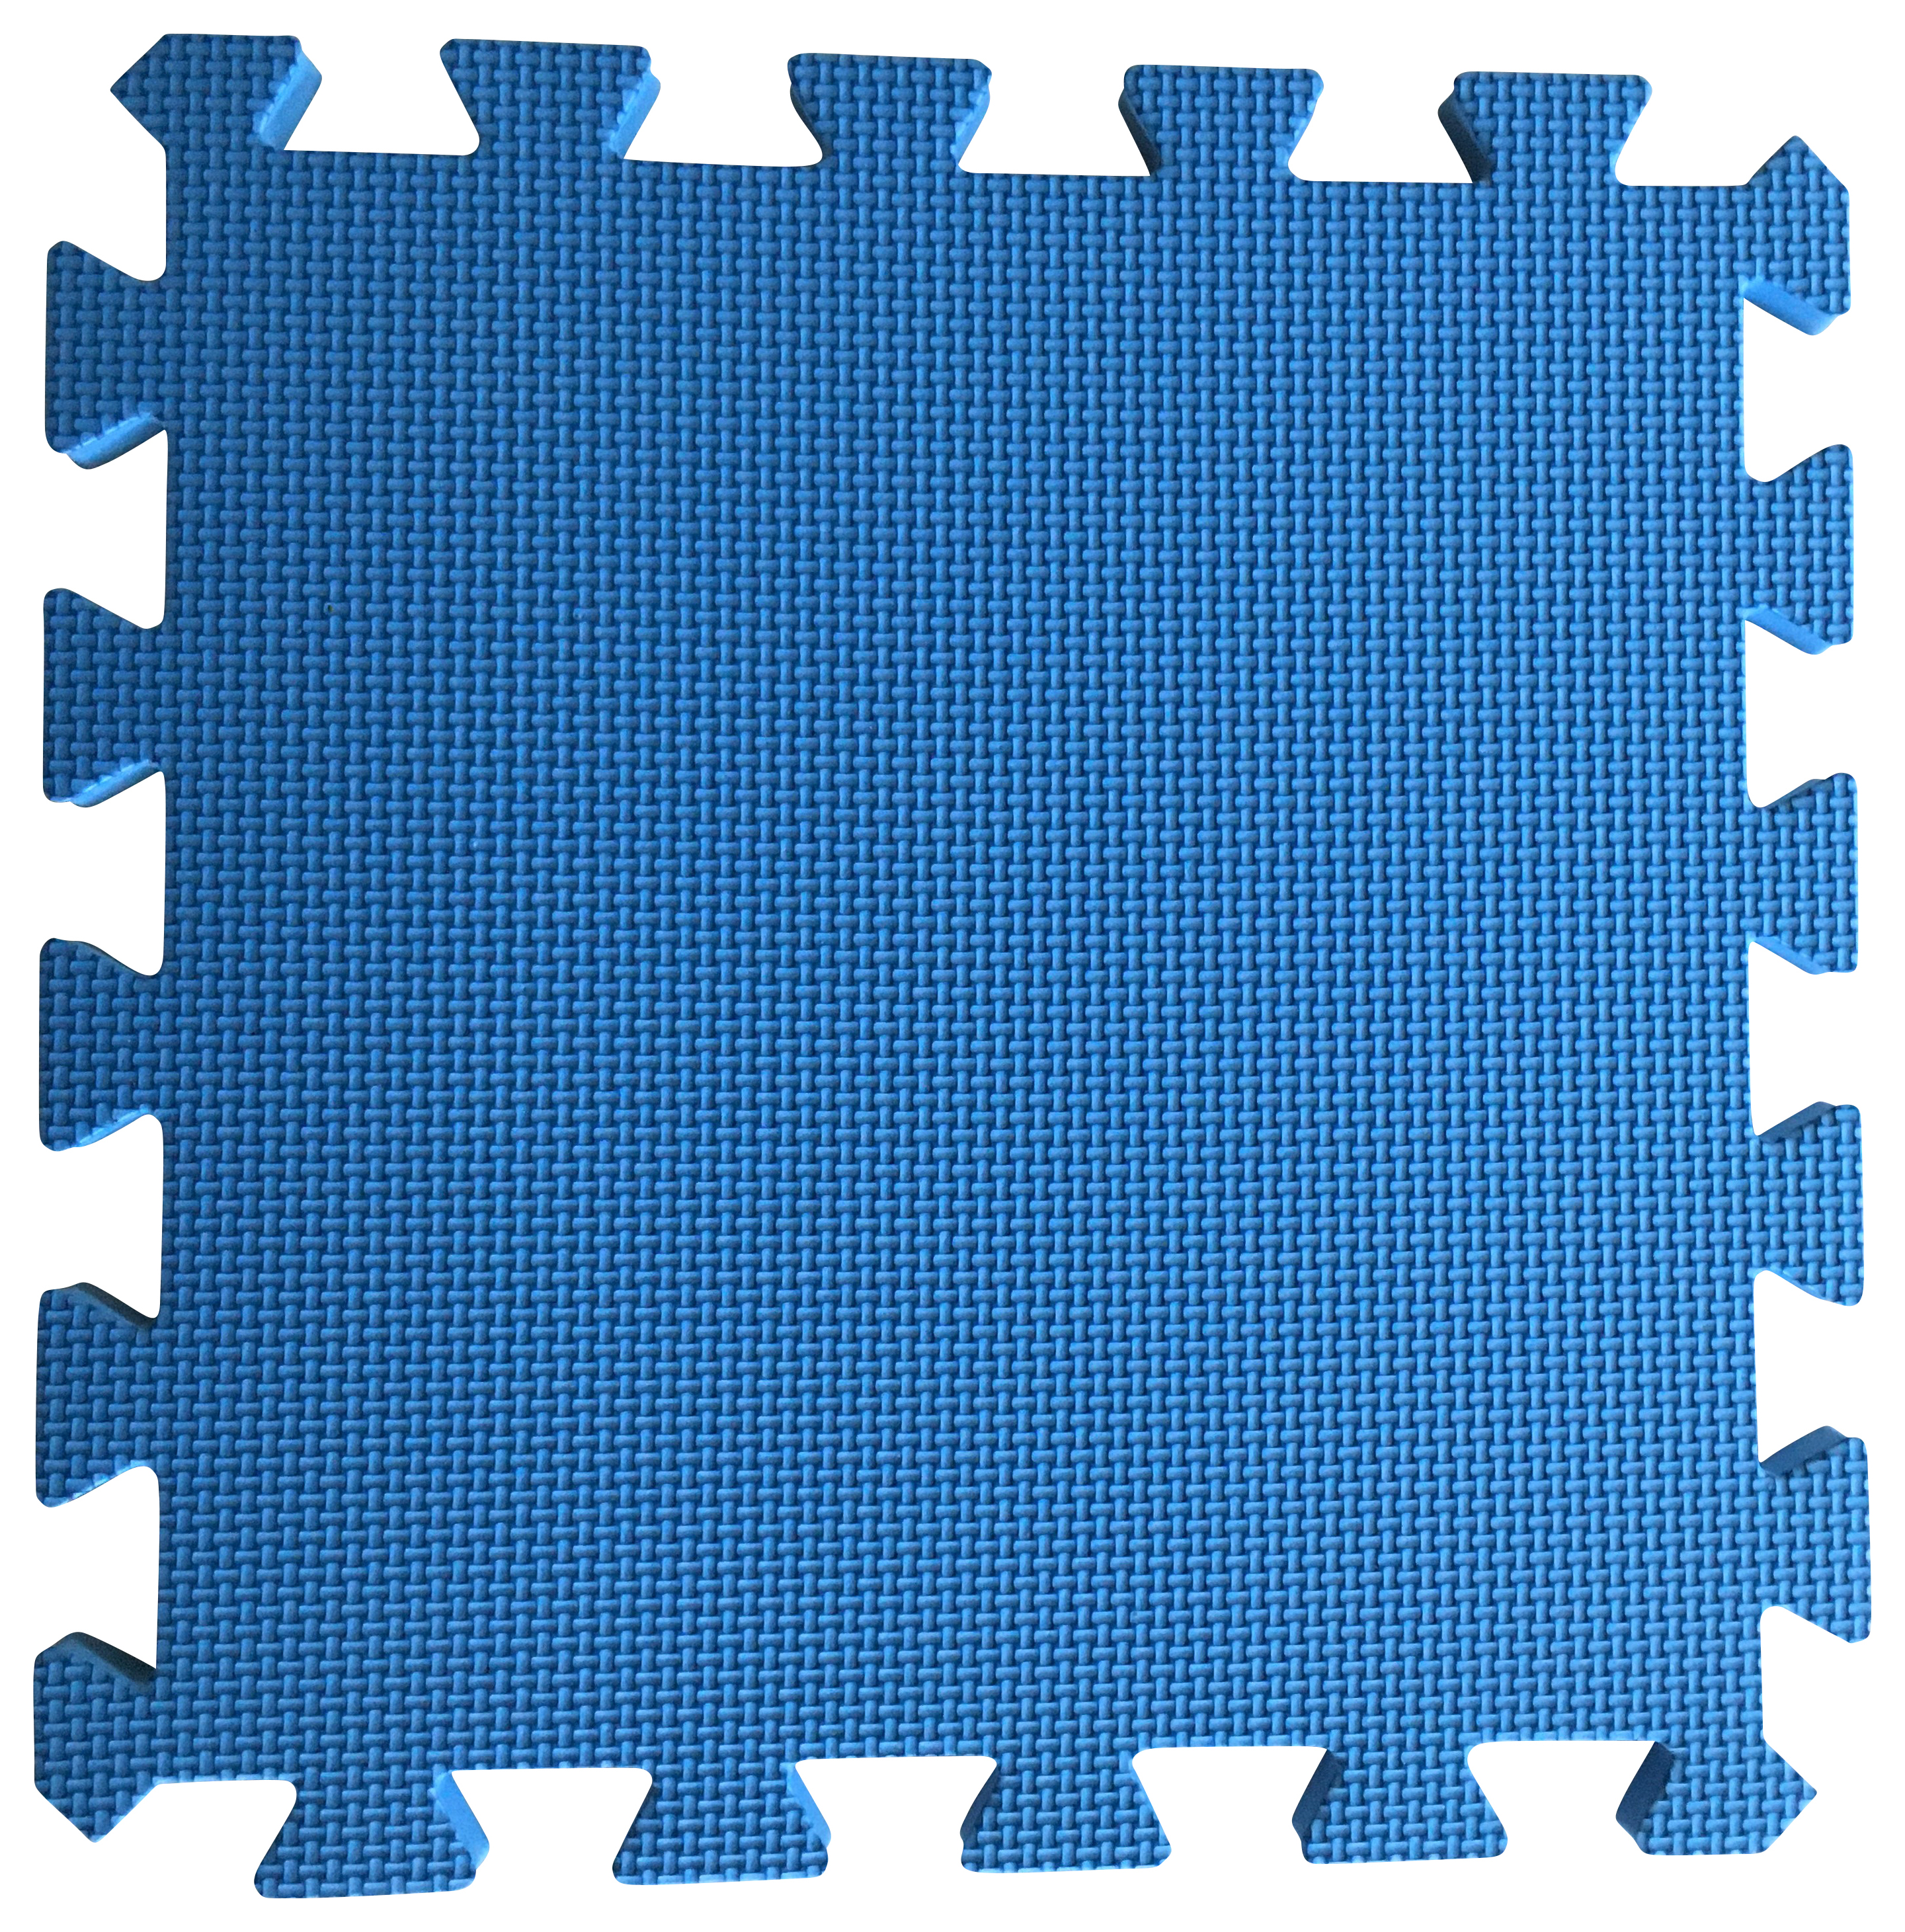 Warm Floor Blue Interlocking Floor Tiles for Garden Buildings - 4 x 6ft & 8 x 3ft